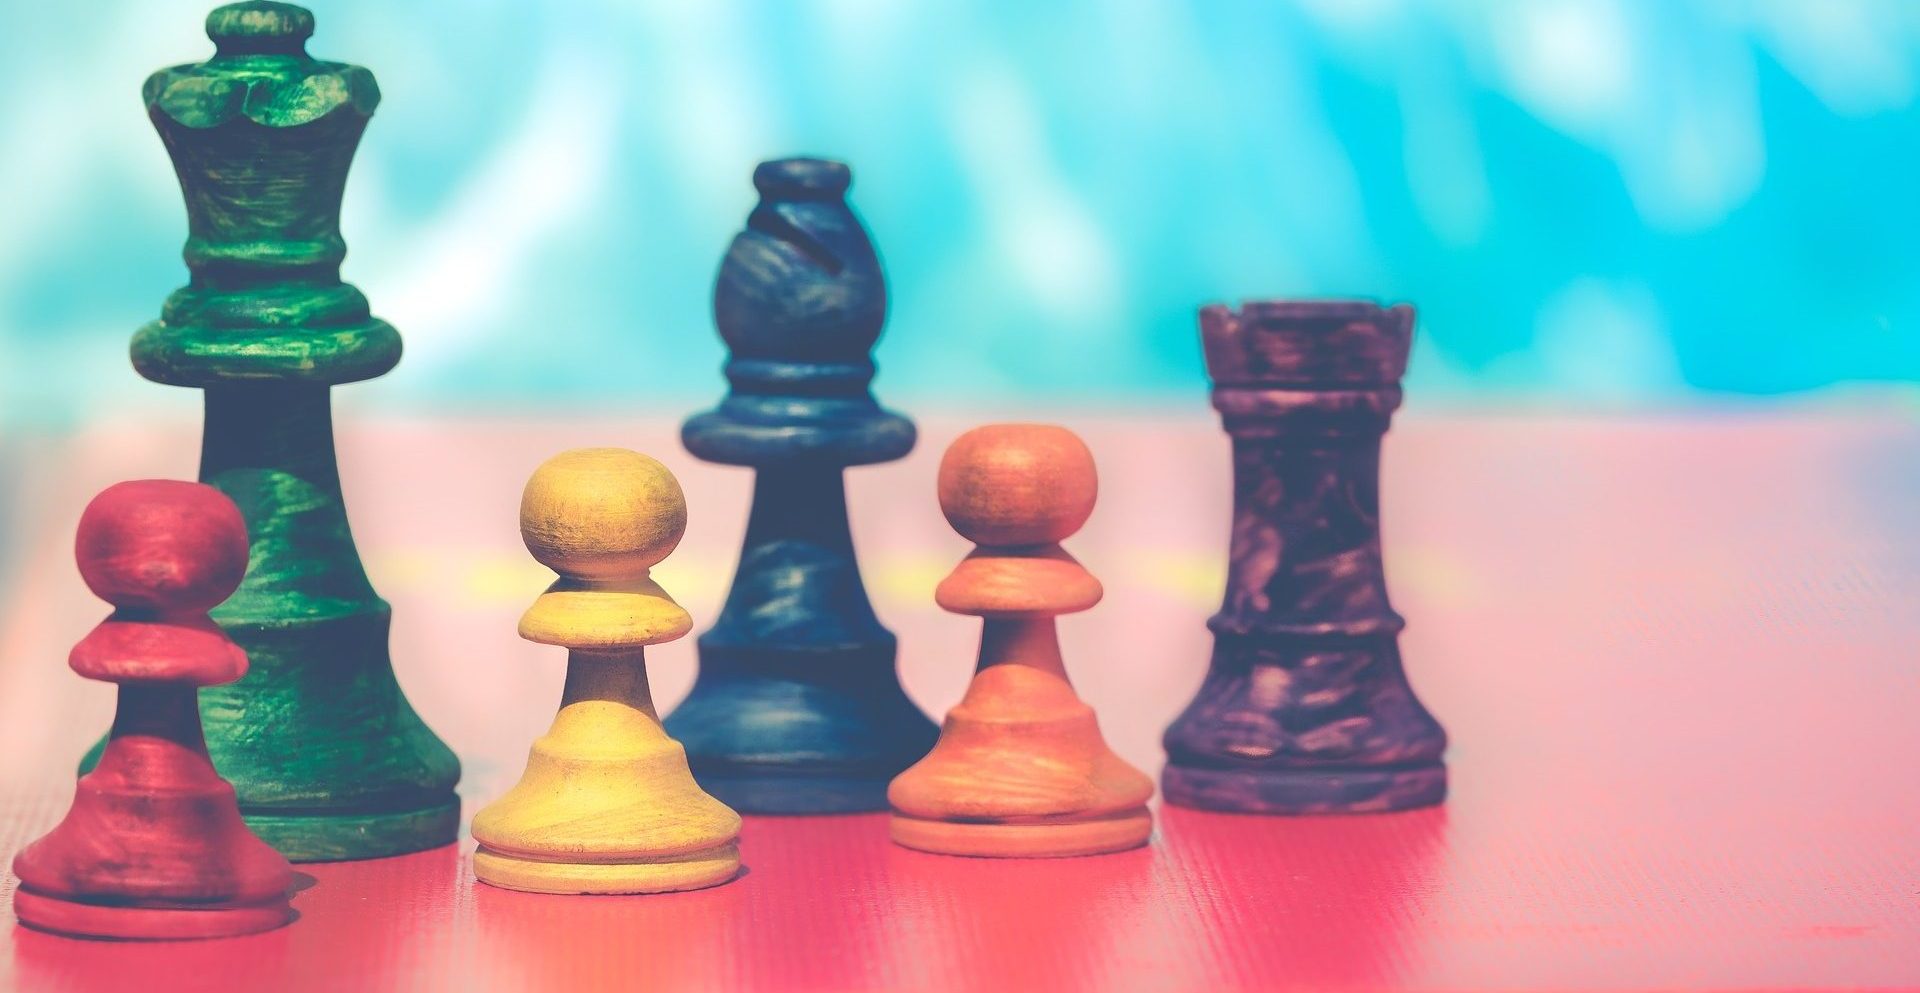 Окружные соревнования по шахматам состоятся в спорткомплексе «Щемиловский». Фото: pixabay.com